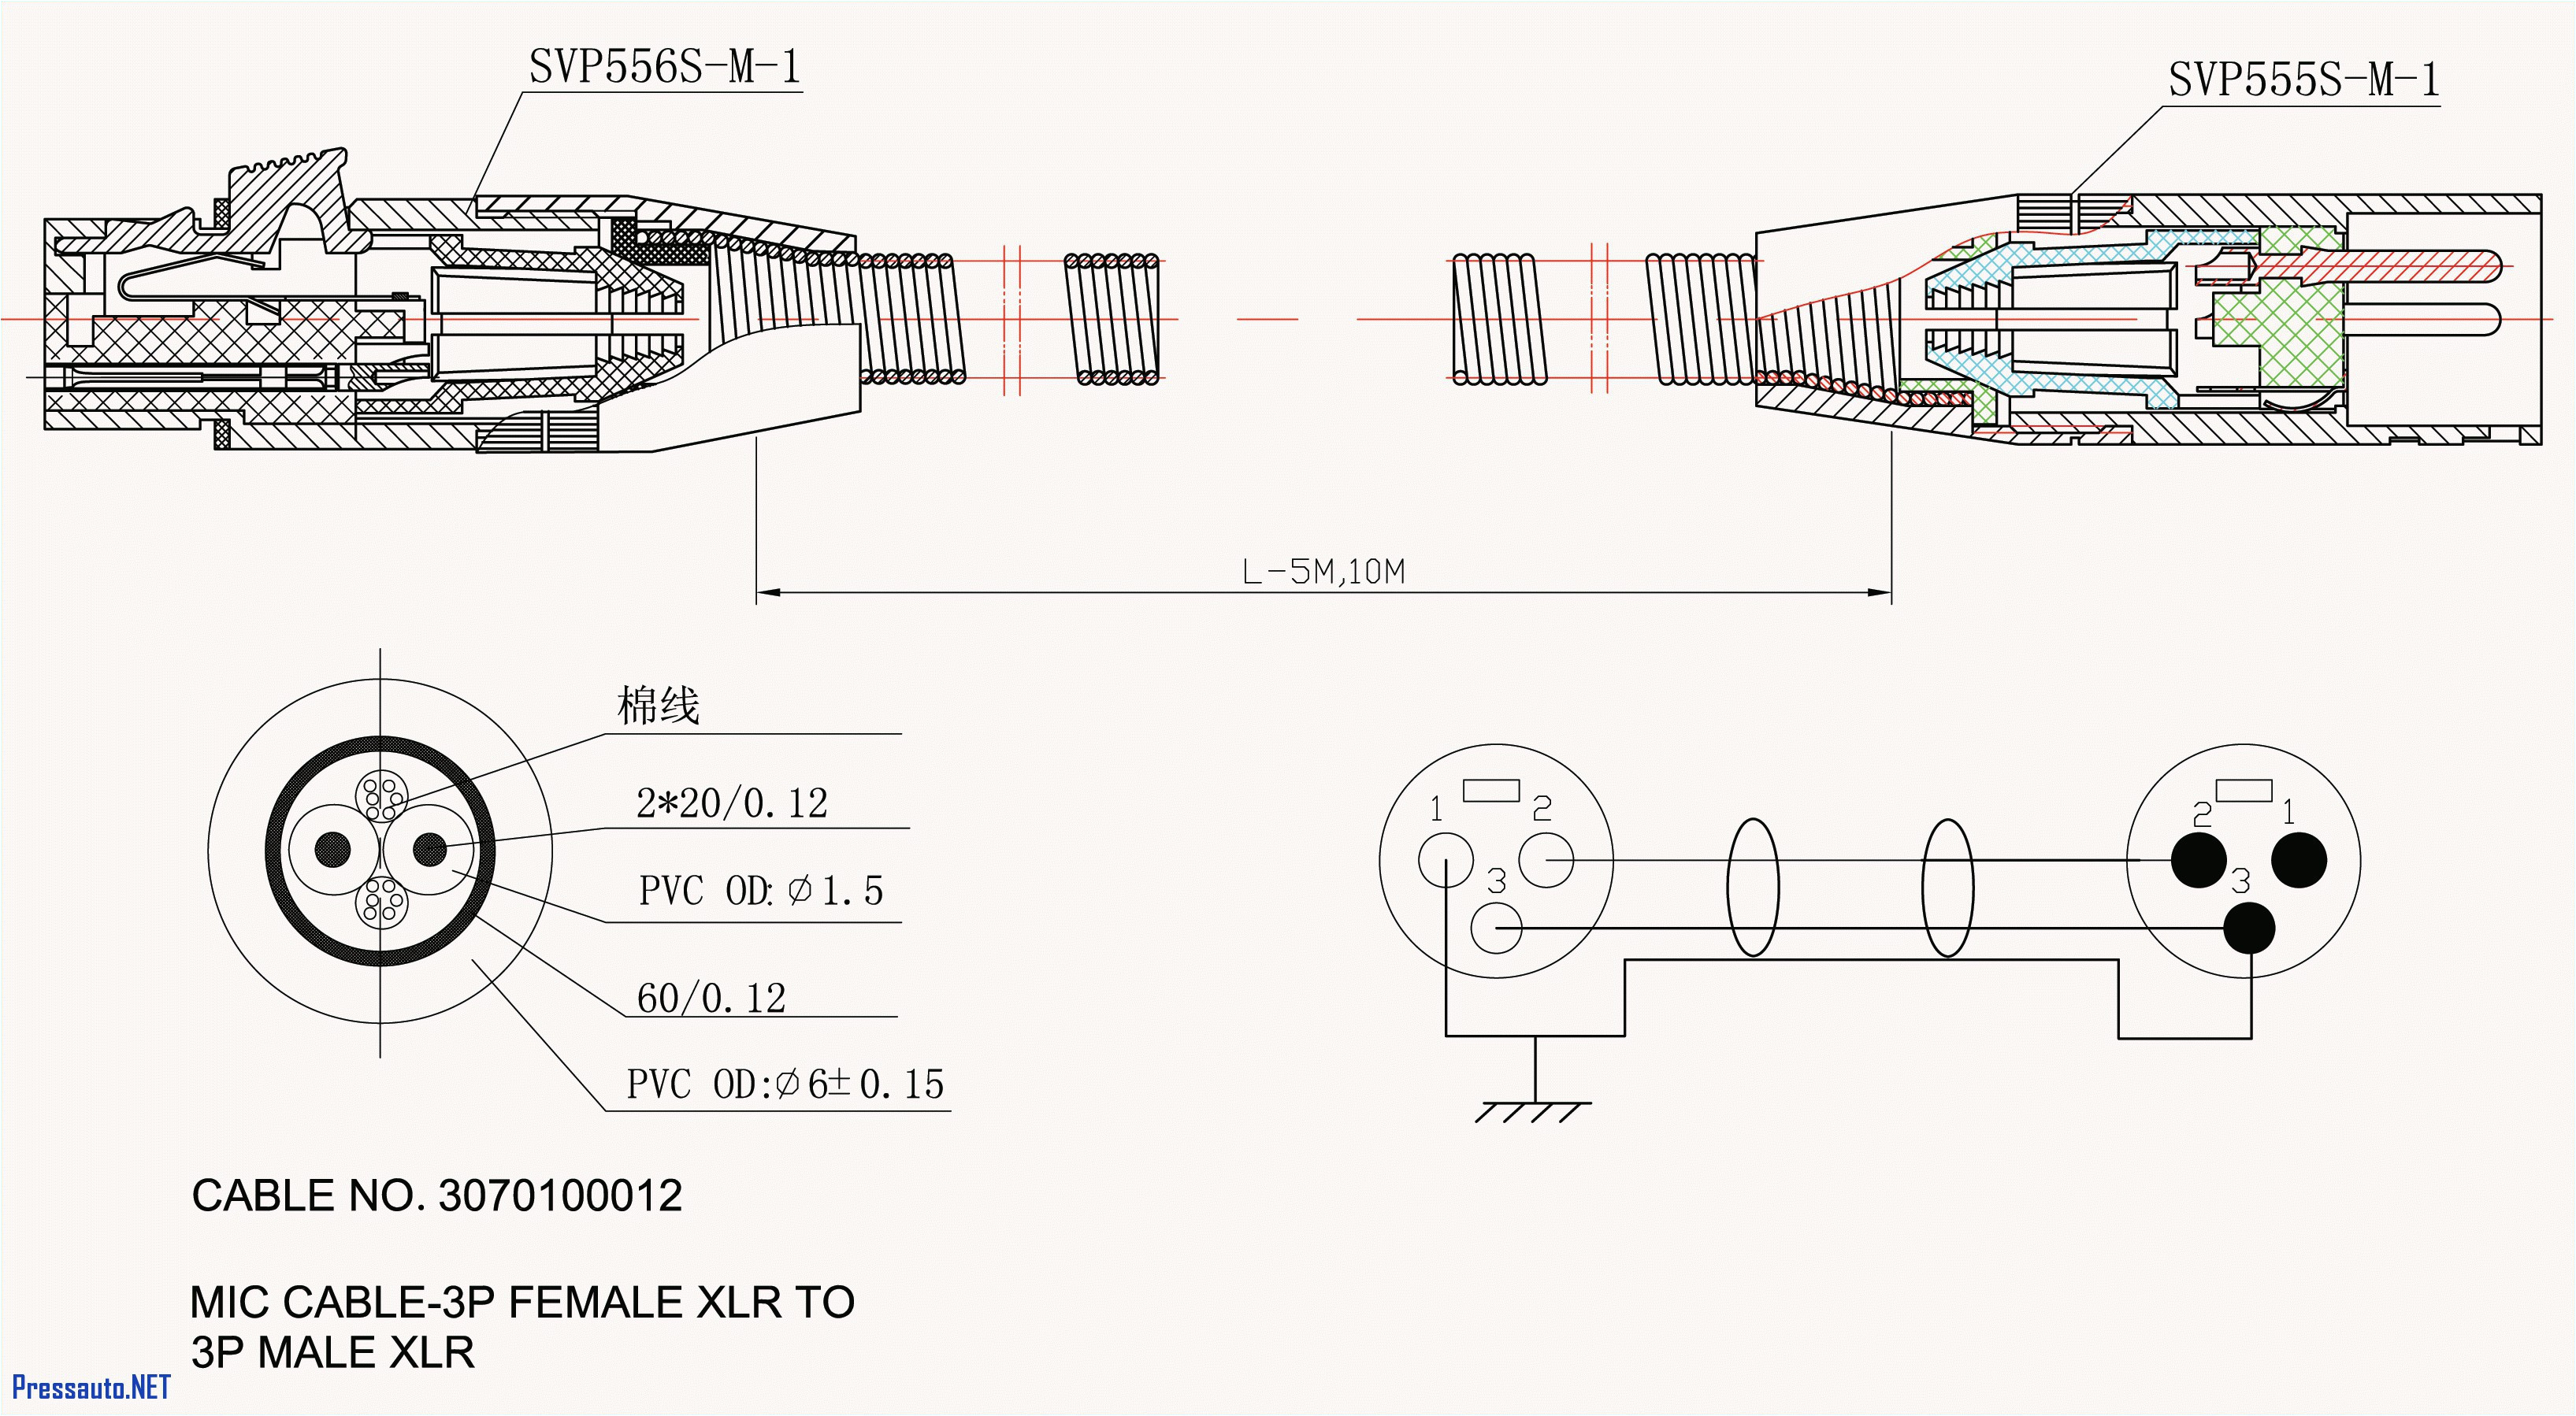 male xlr wiring diagram wiring diagram datasource6 pin xlr wiring diagram wiring diagram toolbox male xlr